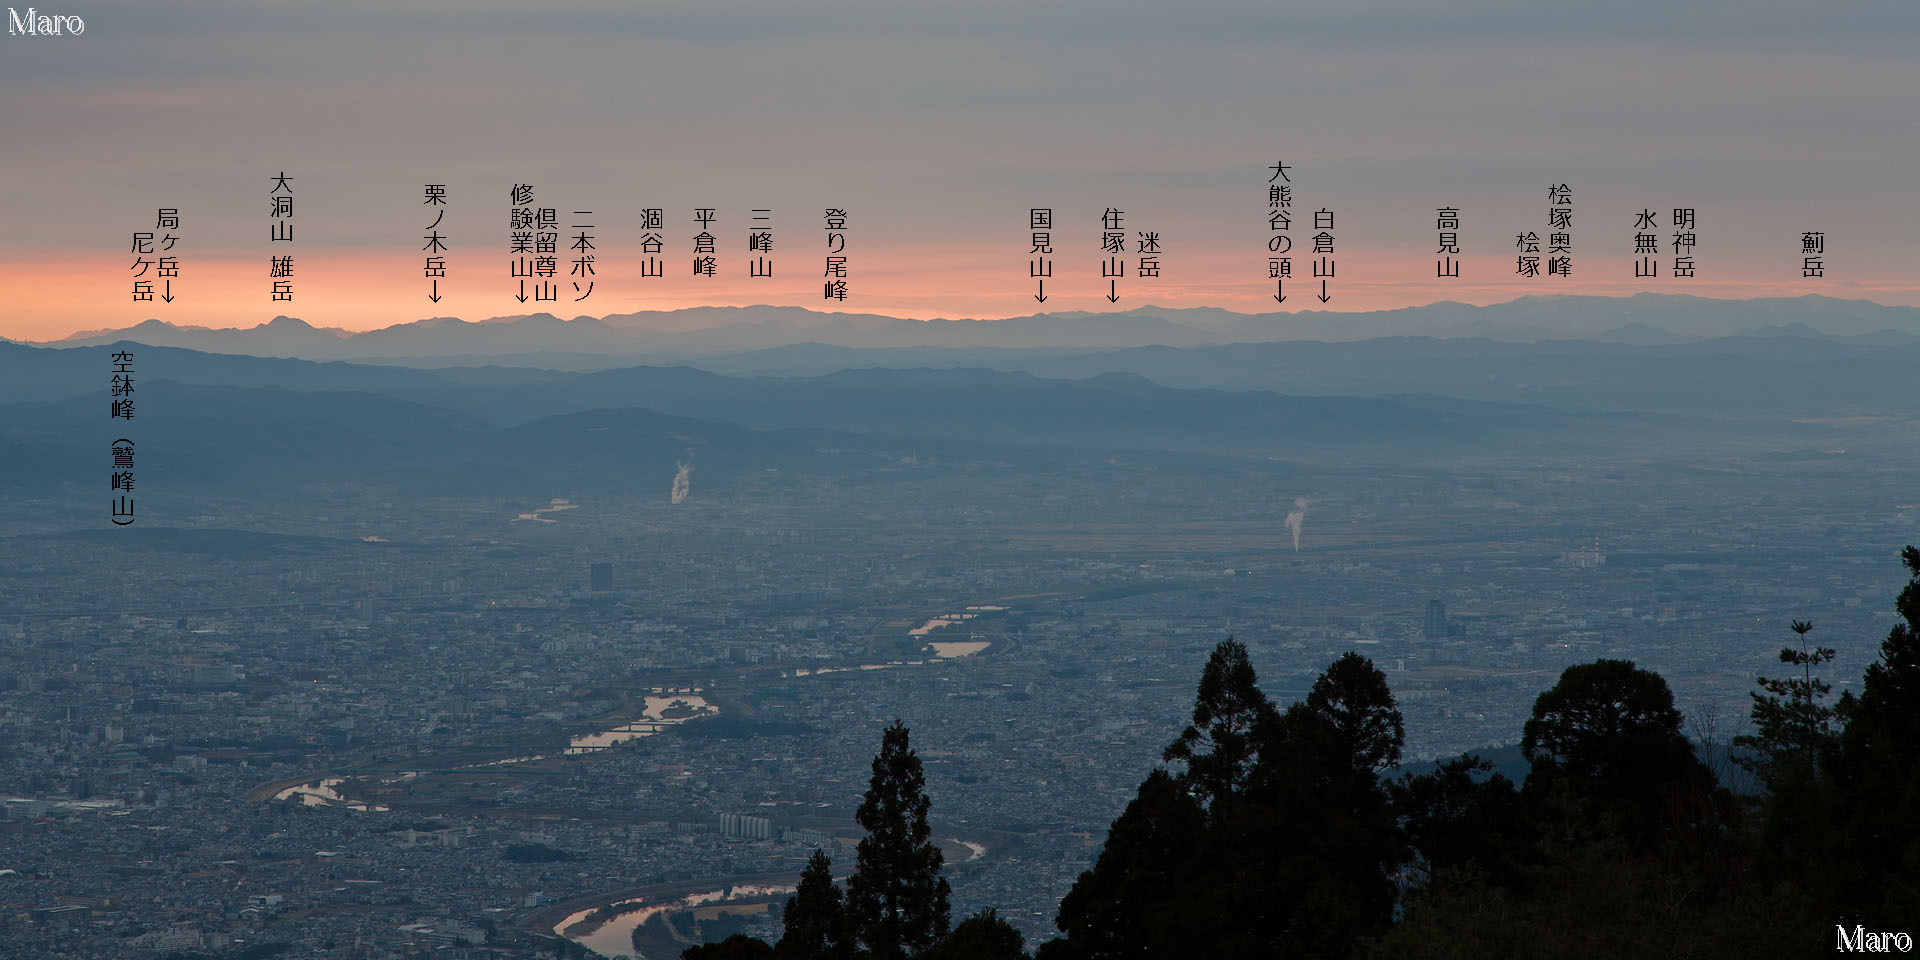 愛宕山の展望 高見山地、台高山脈、京都盆地を三角点峰から望む 2012年1月